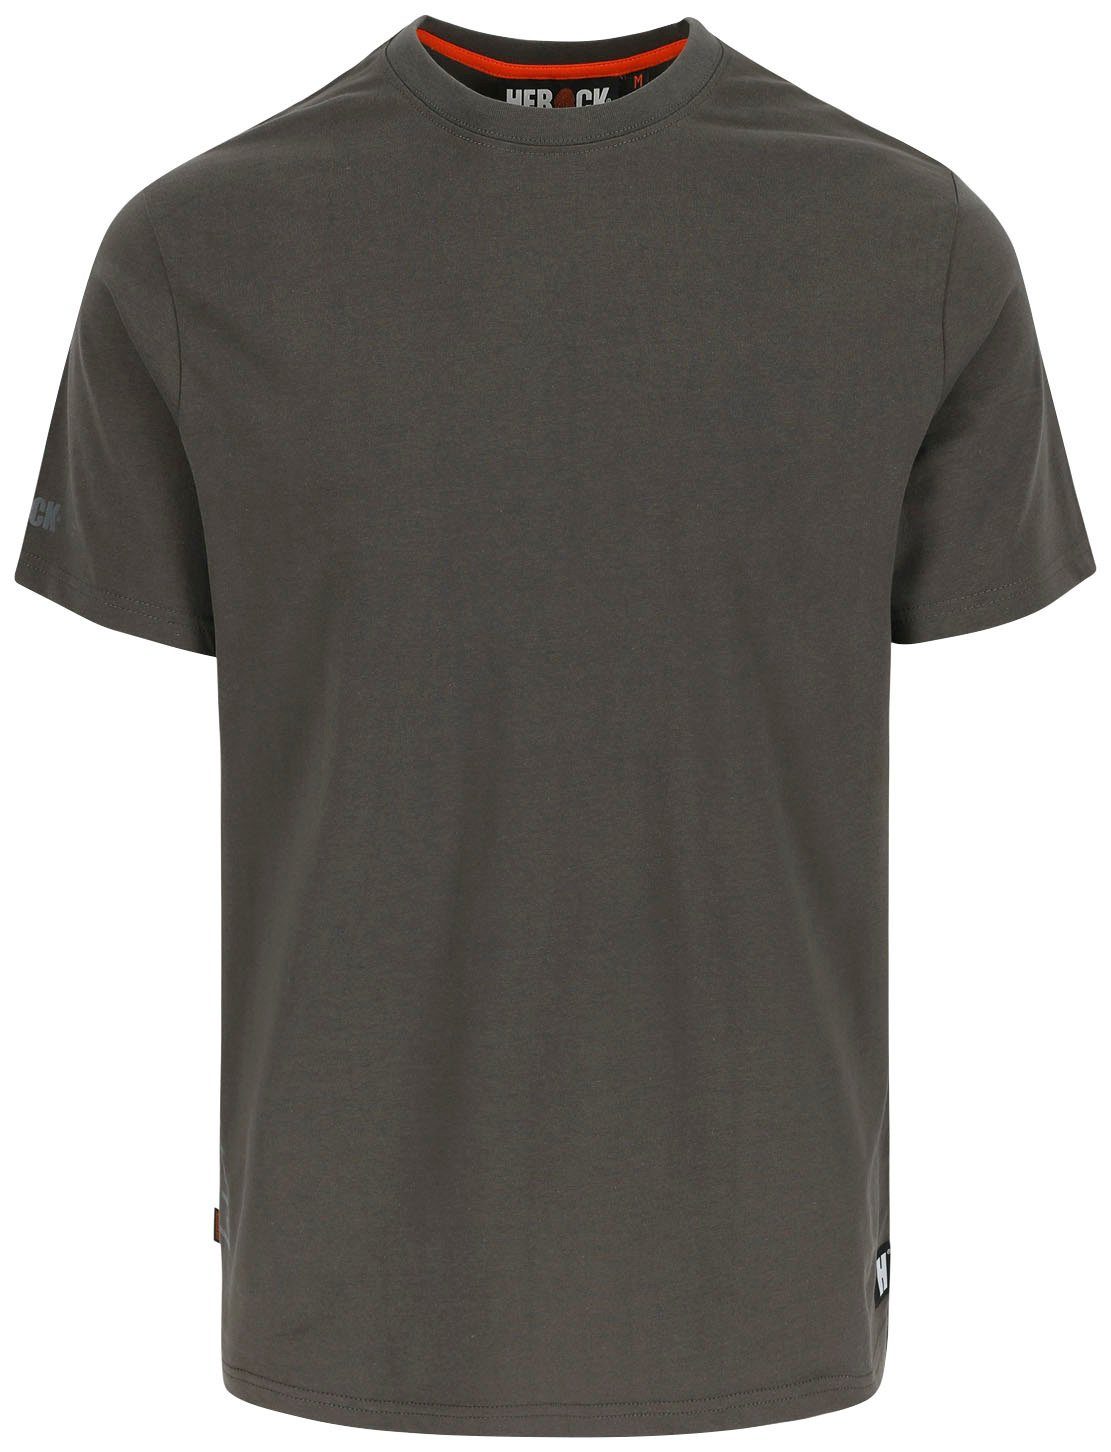 Herock T-Shirt Callius T-Shirt kurze Ärmel Rundhalsausschnitt, kurze Ärmel, Herock®-Aufdruck, Rippstrickkragen grau